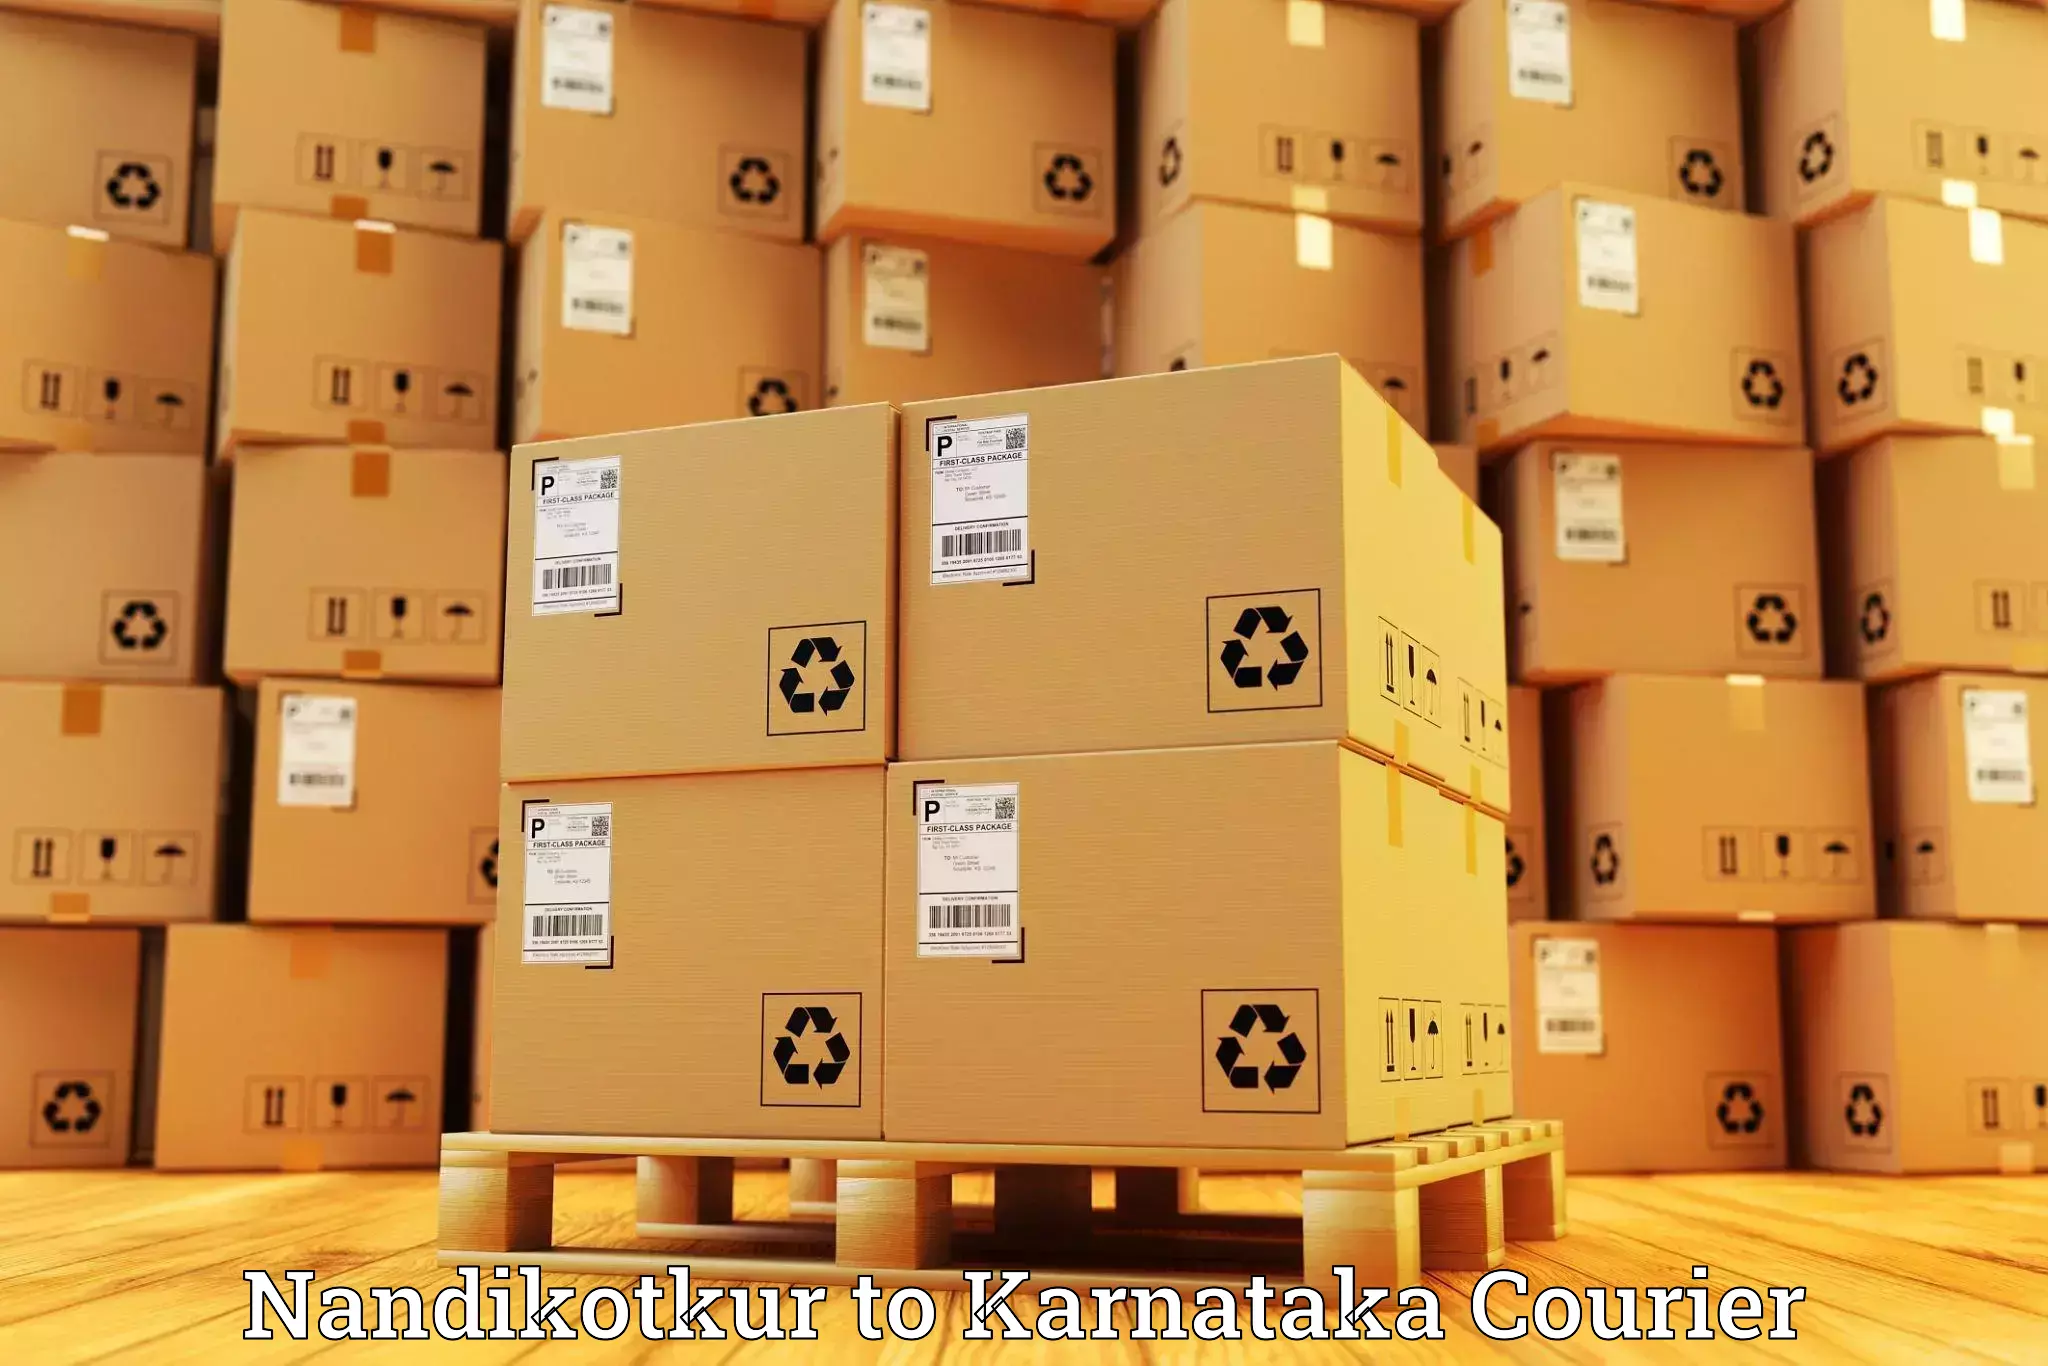 24/7 courier service in Nandikotkur to Ramdurg